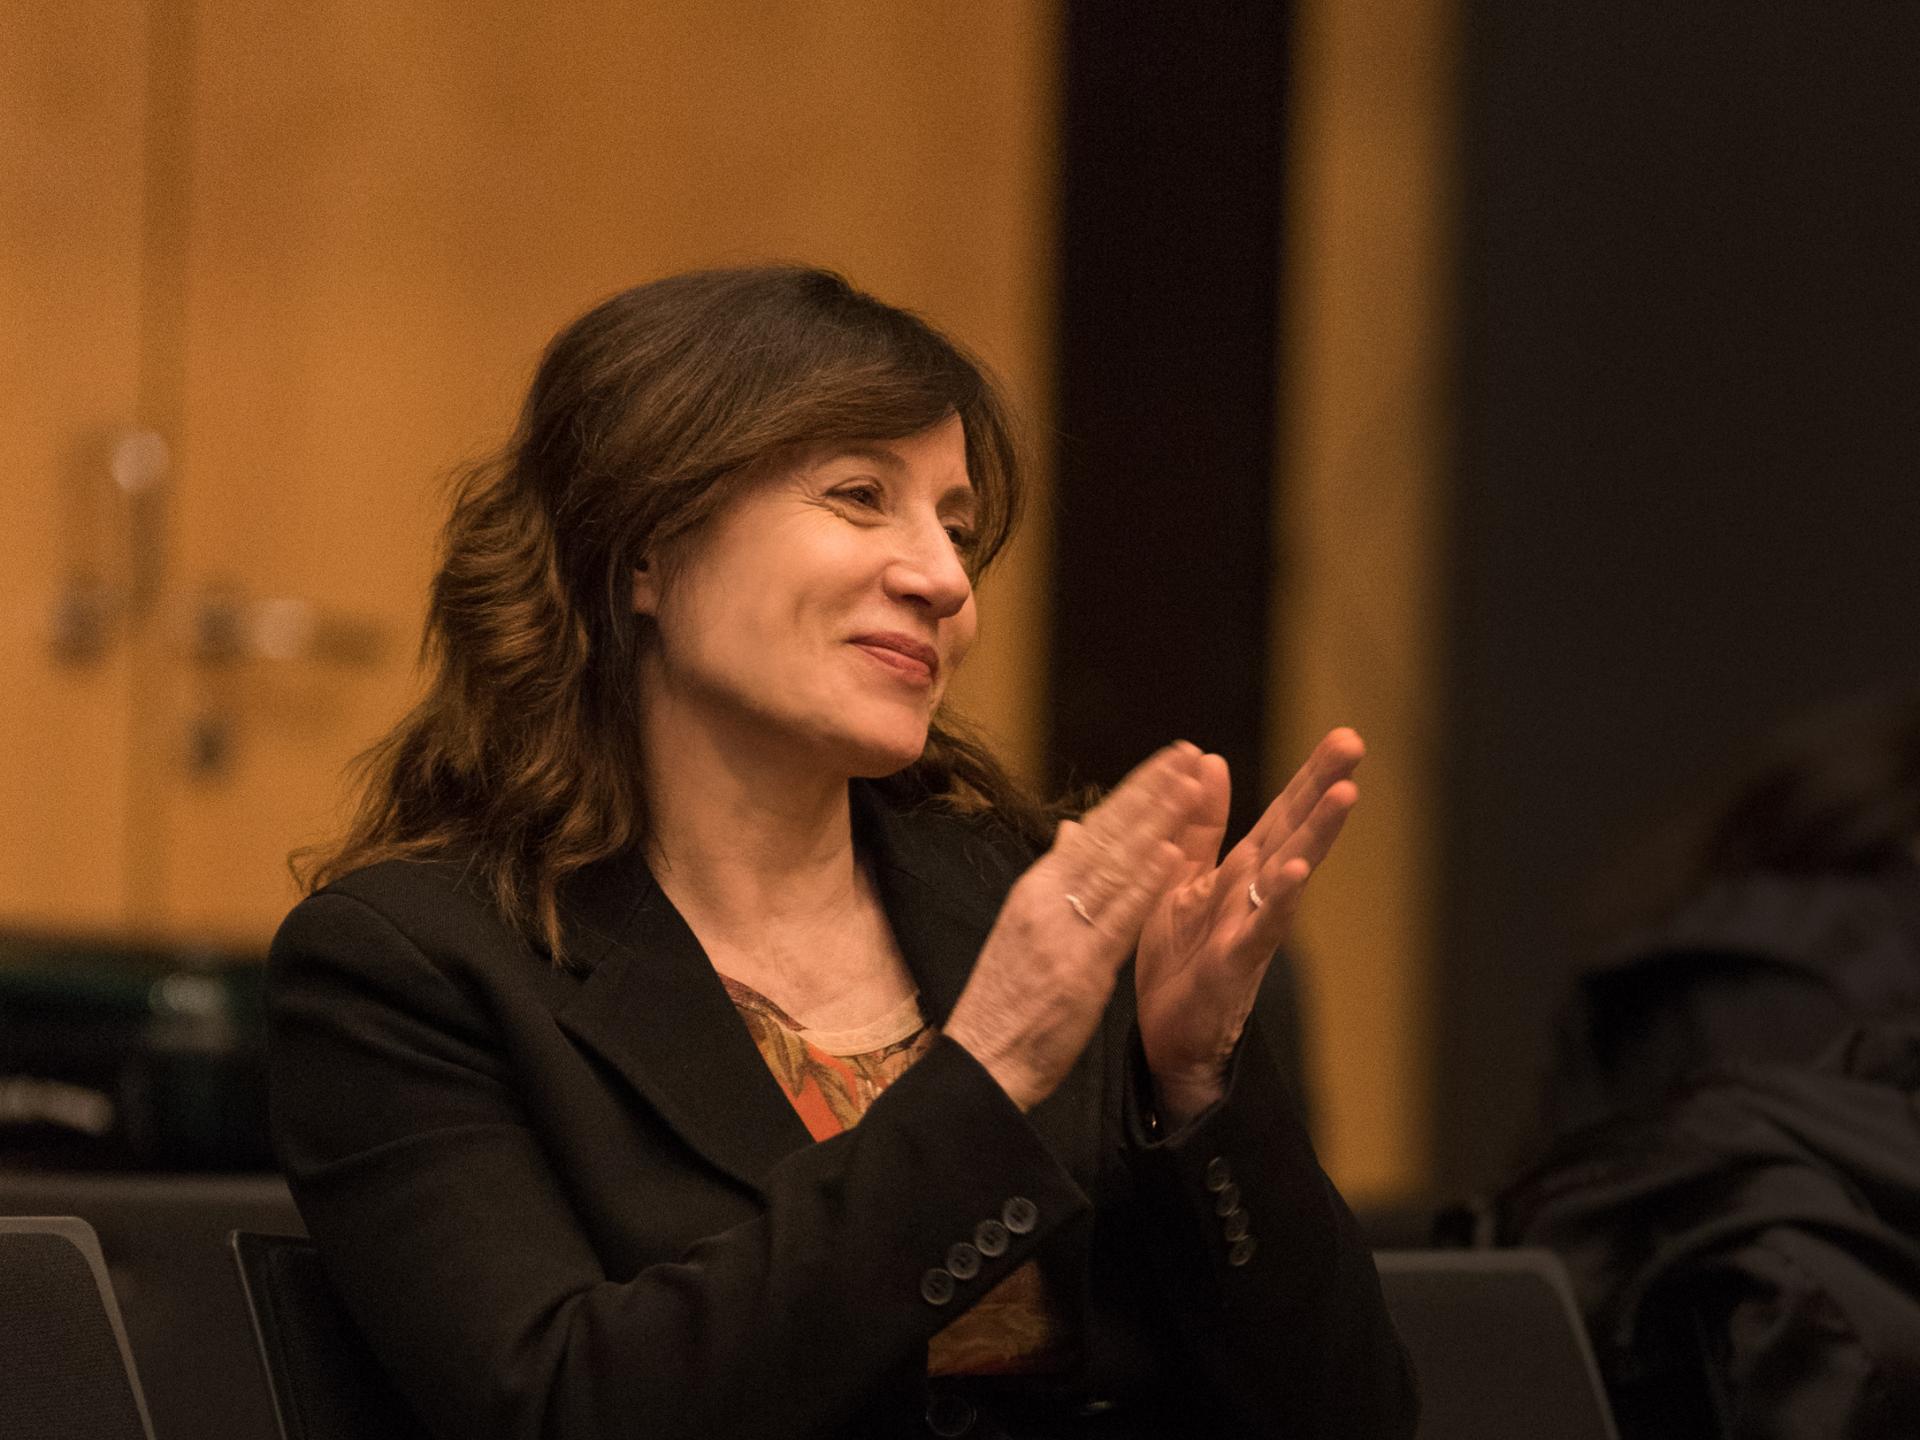 Die Komponistin Lucia Ronchetti sitzt lächelnd und klatschend im Zuschauerraum